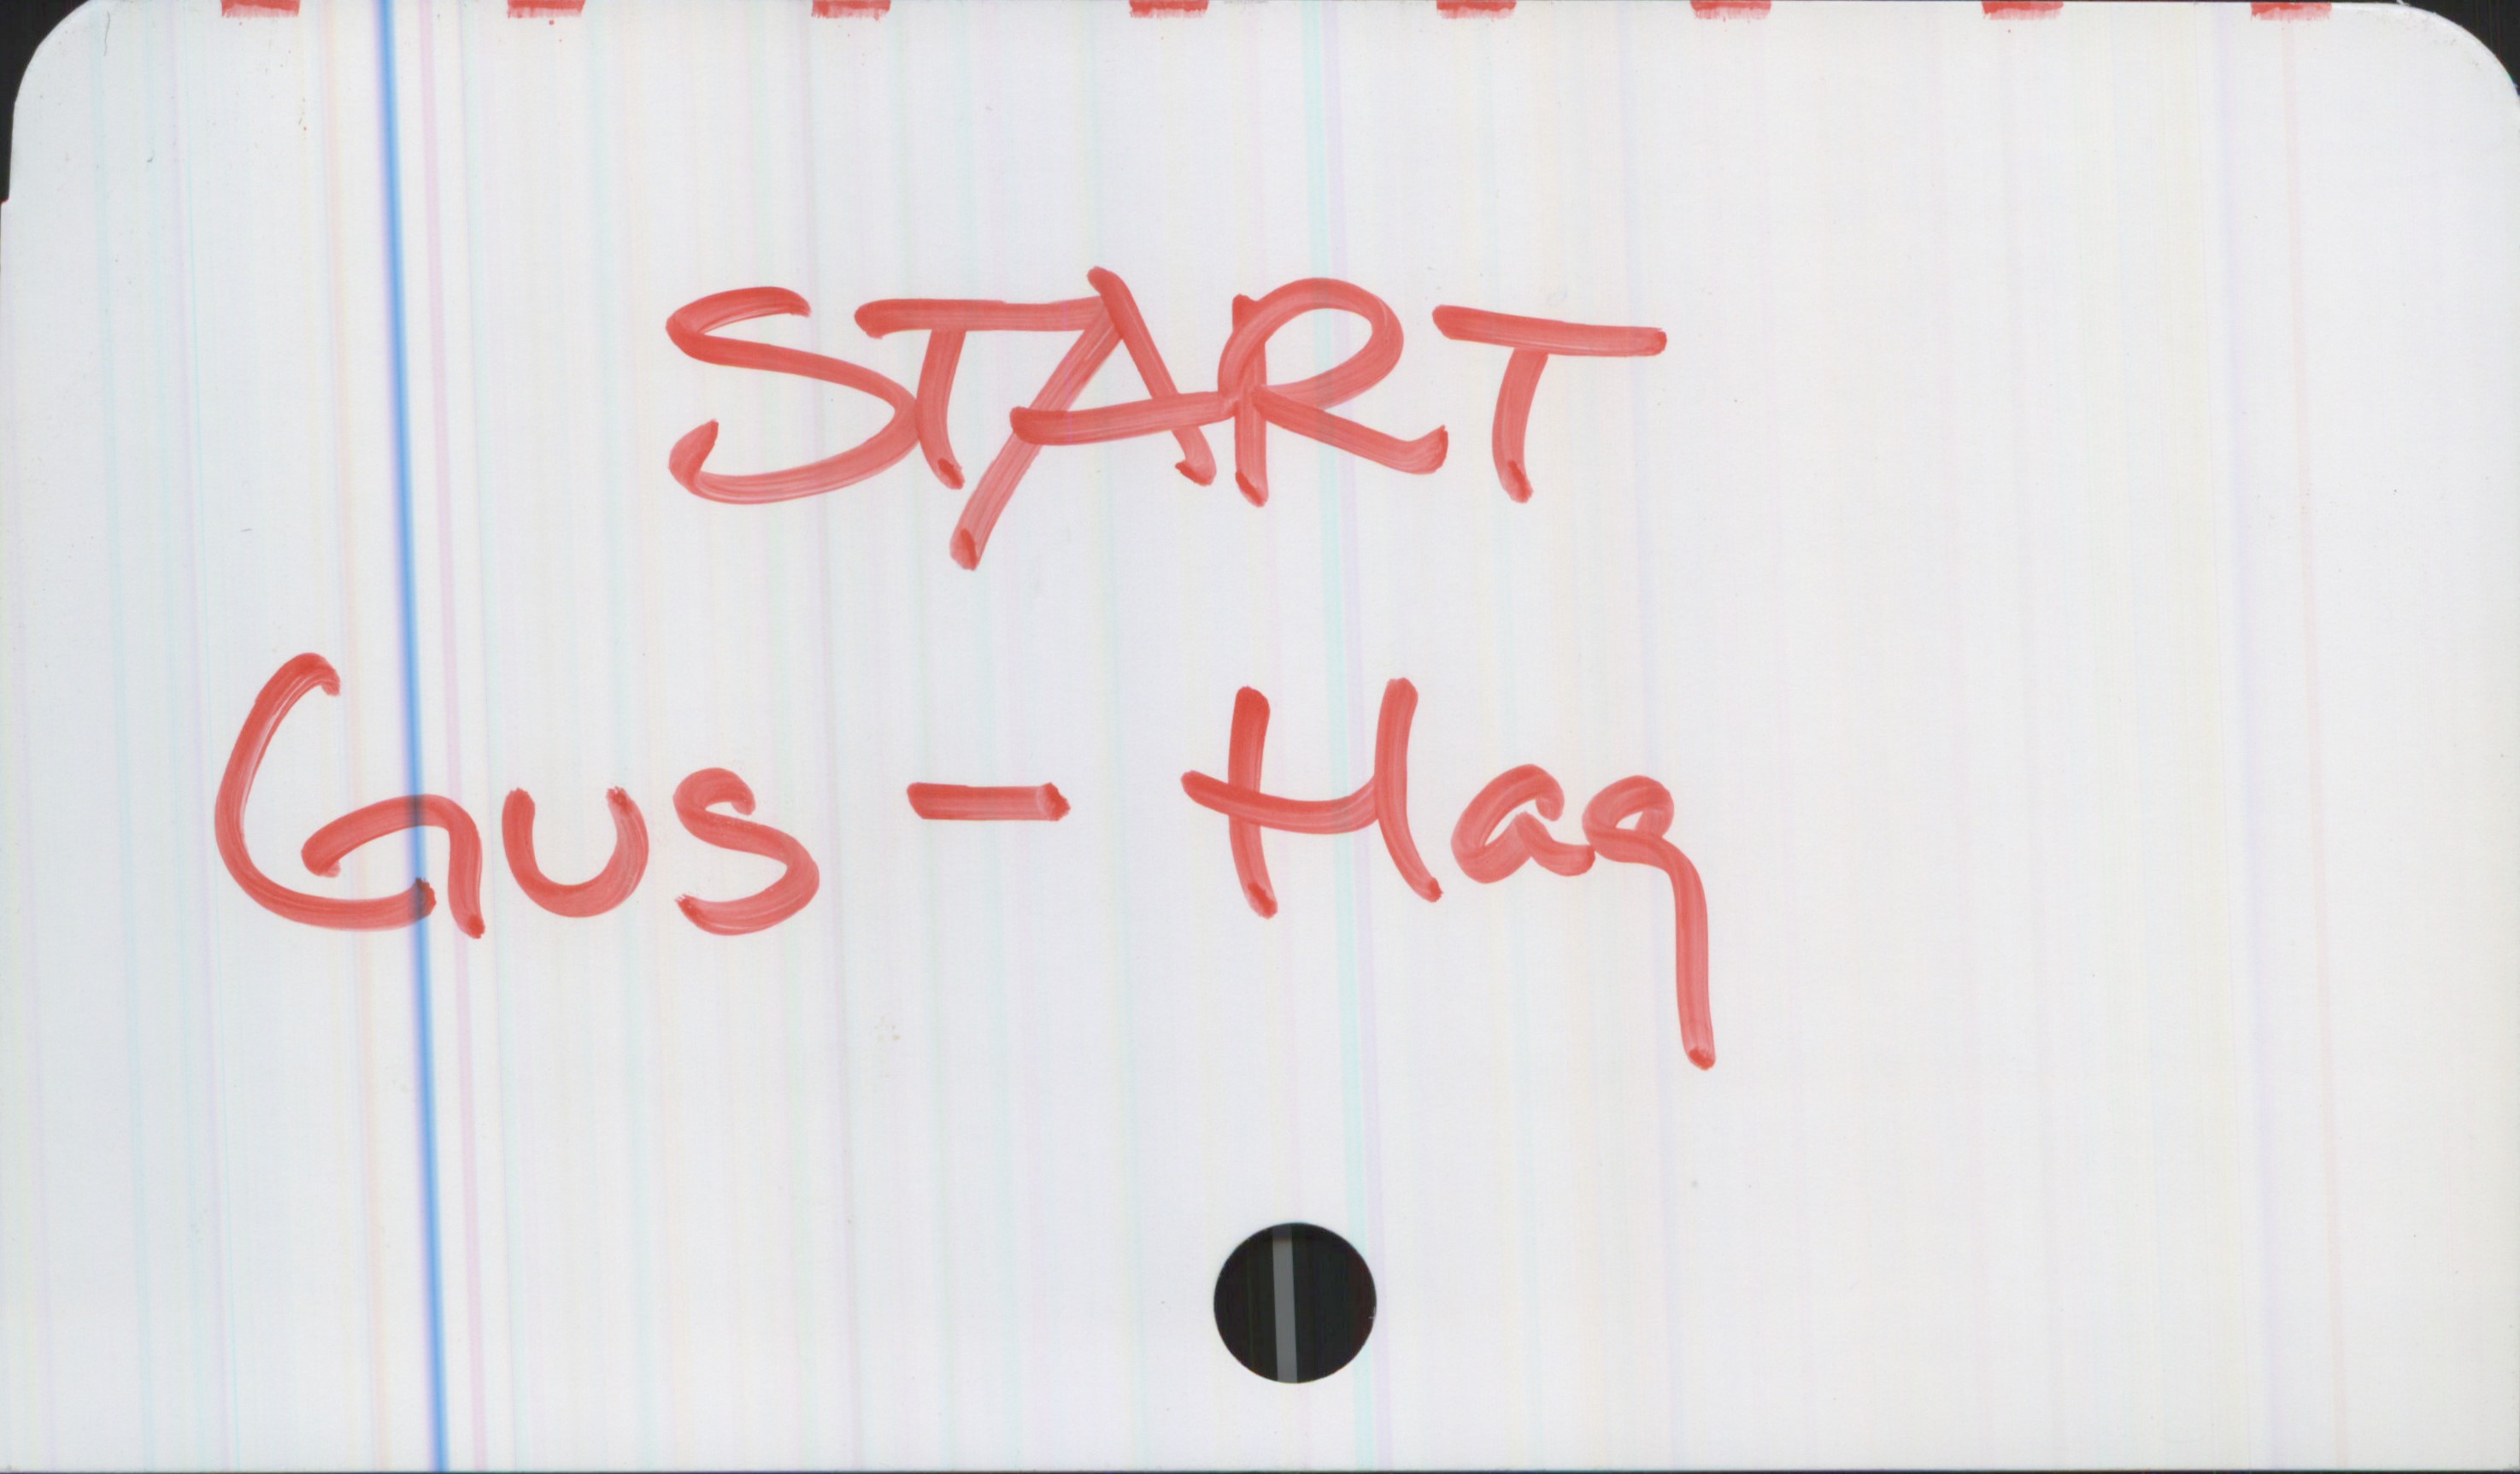 START START

Gus - Hag